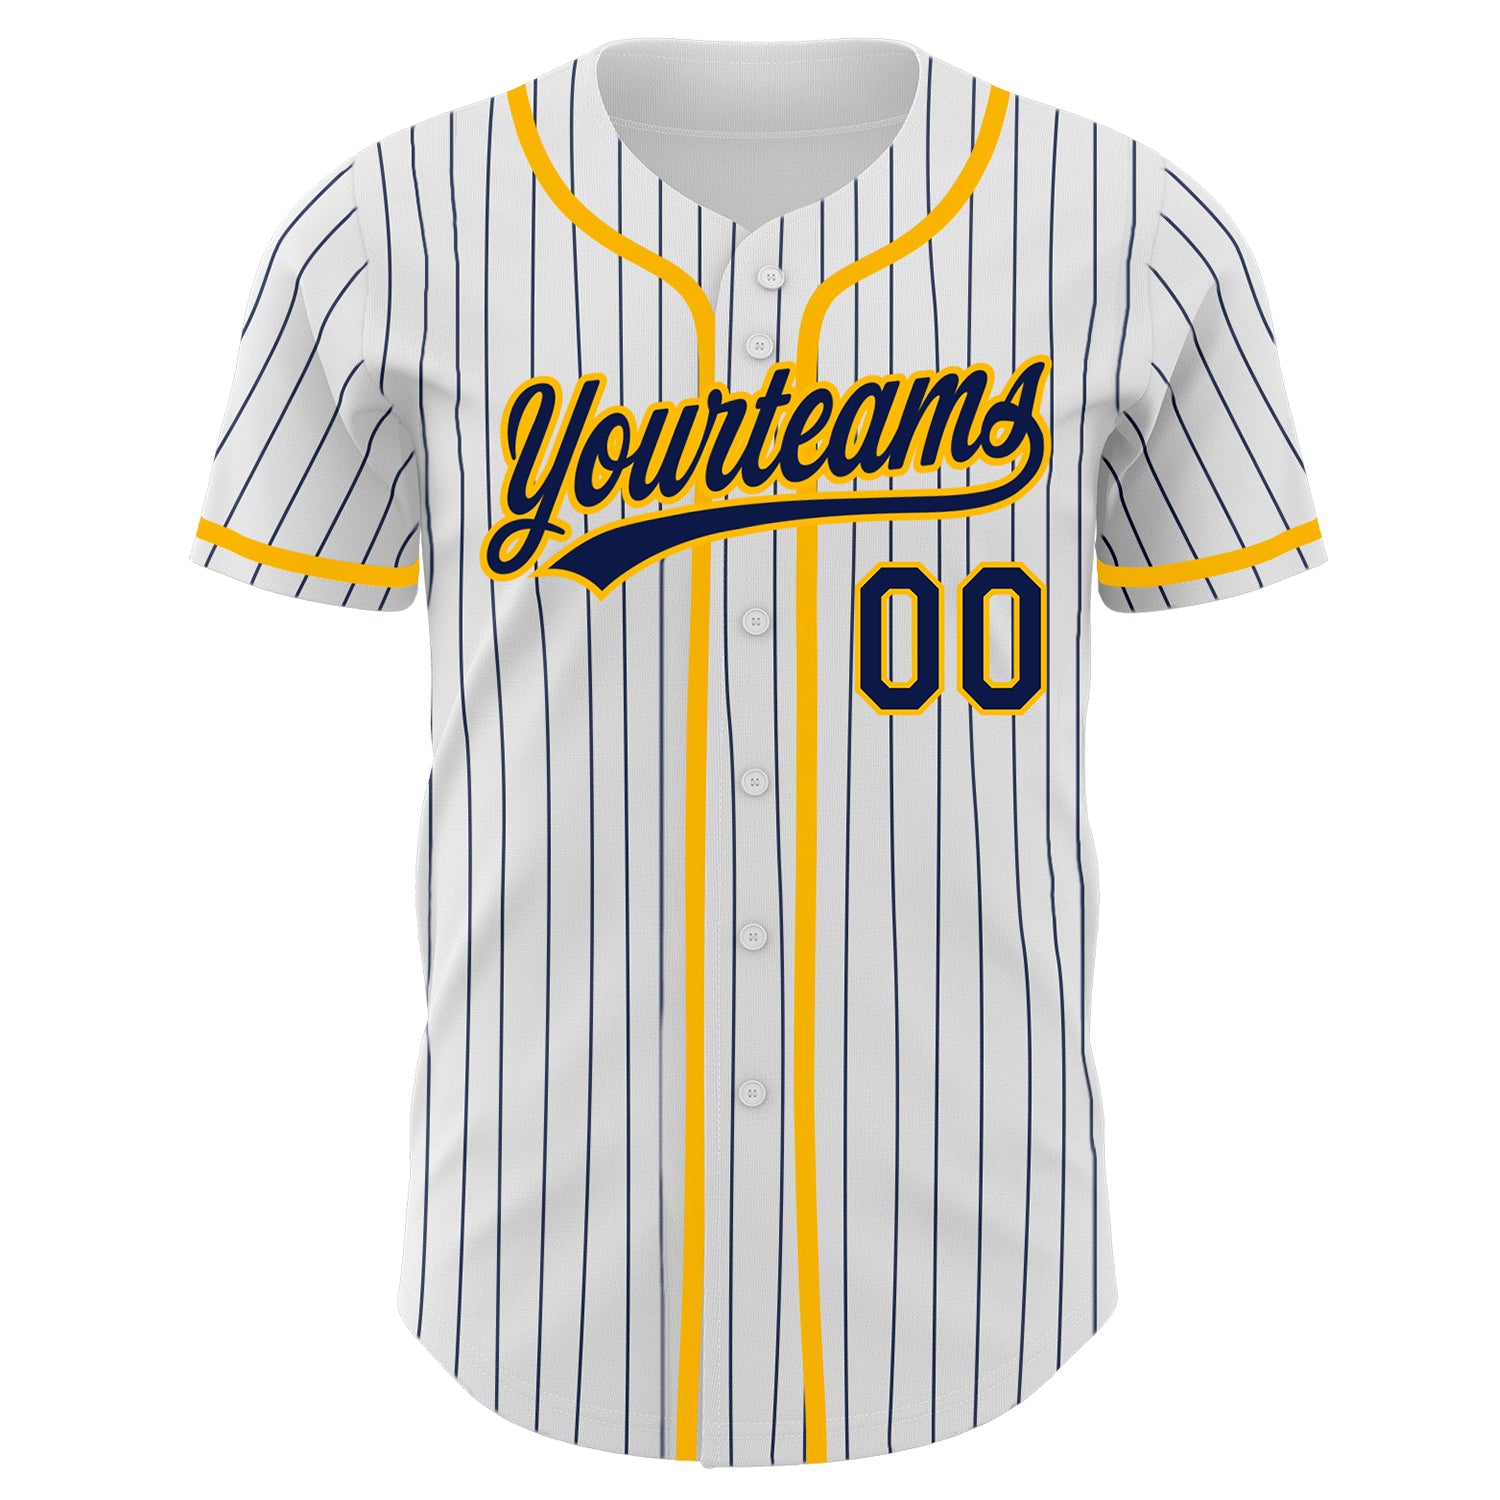 Custom-White-Navy-Pinstripe-Navy-Gold-Baseball-MLB-Jersey-4303